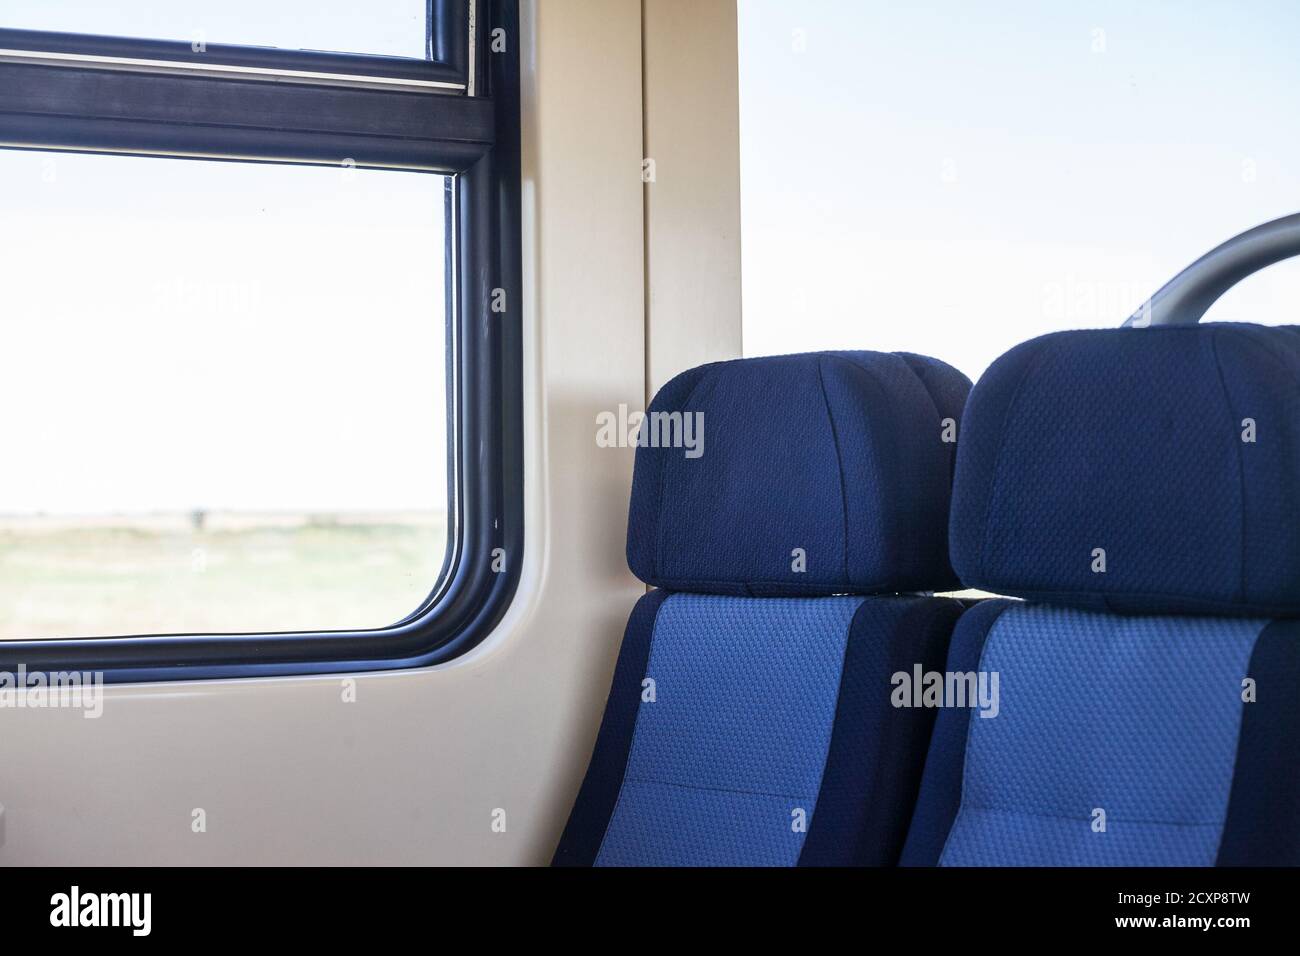 Leere Sitze in einem modernen Regionalzug, im europäischen Stil, auf einer Fahrt in einer Landschaft mit einem Geschwindigkeitsunschärfe-Effekt aus dem Fenster. Bild eines Typi Stockfoto